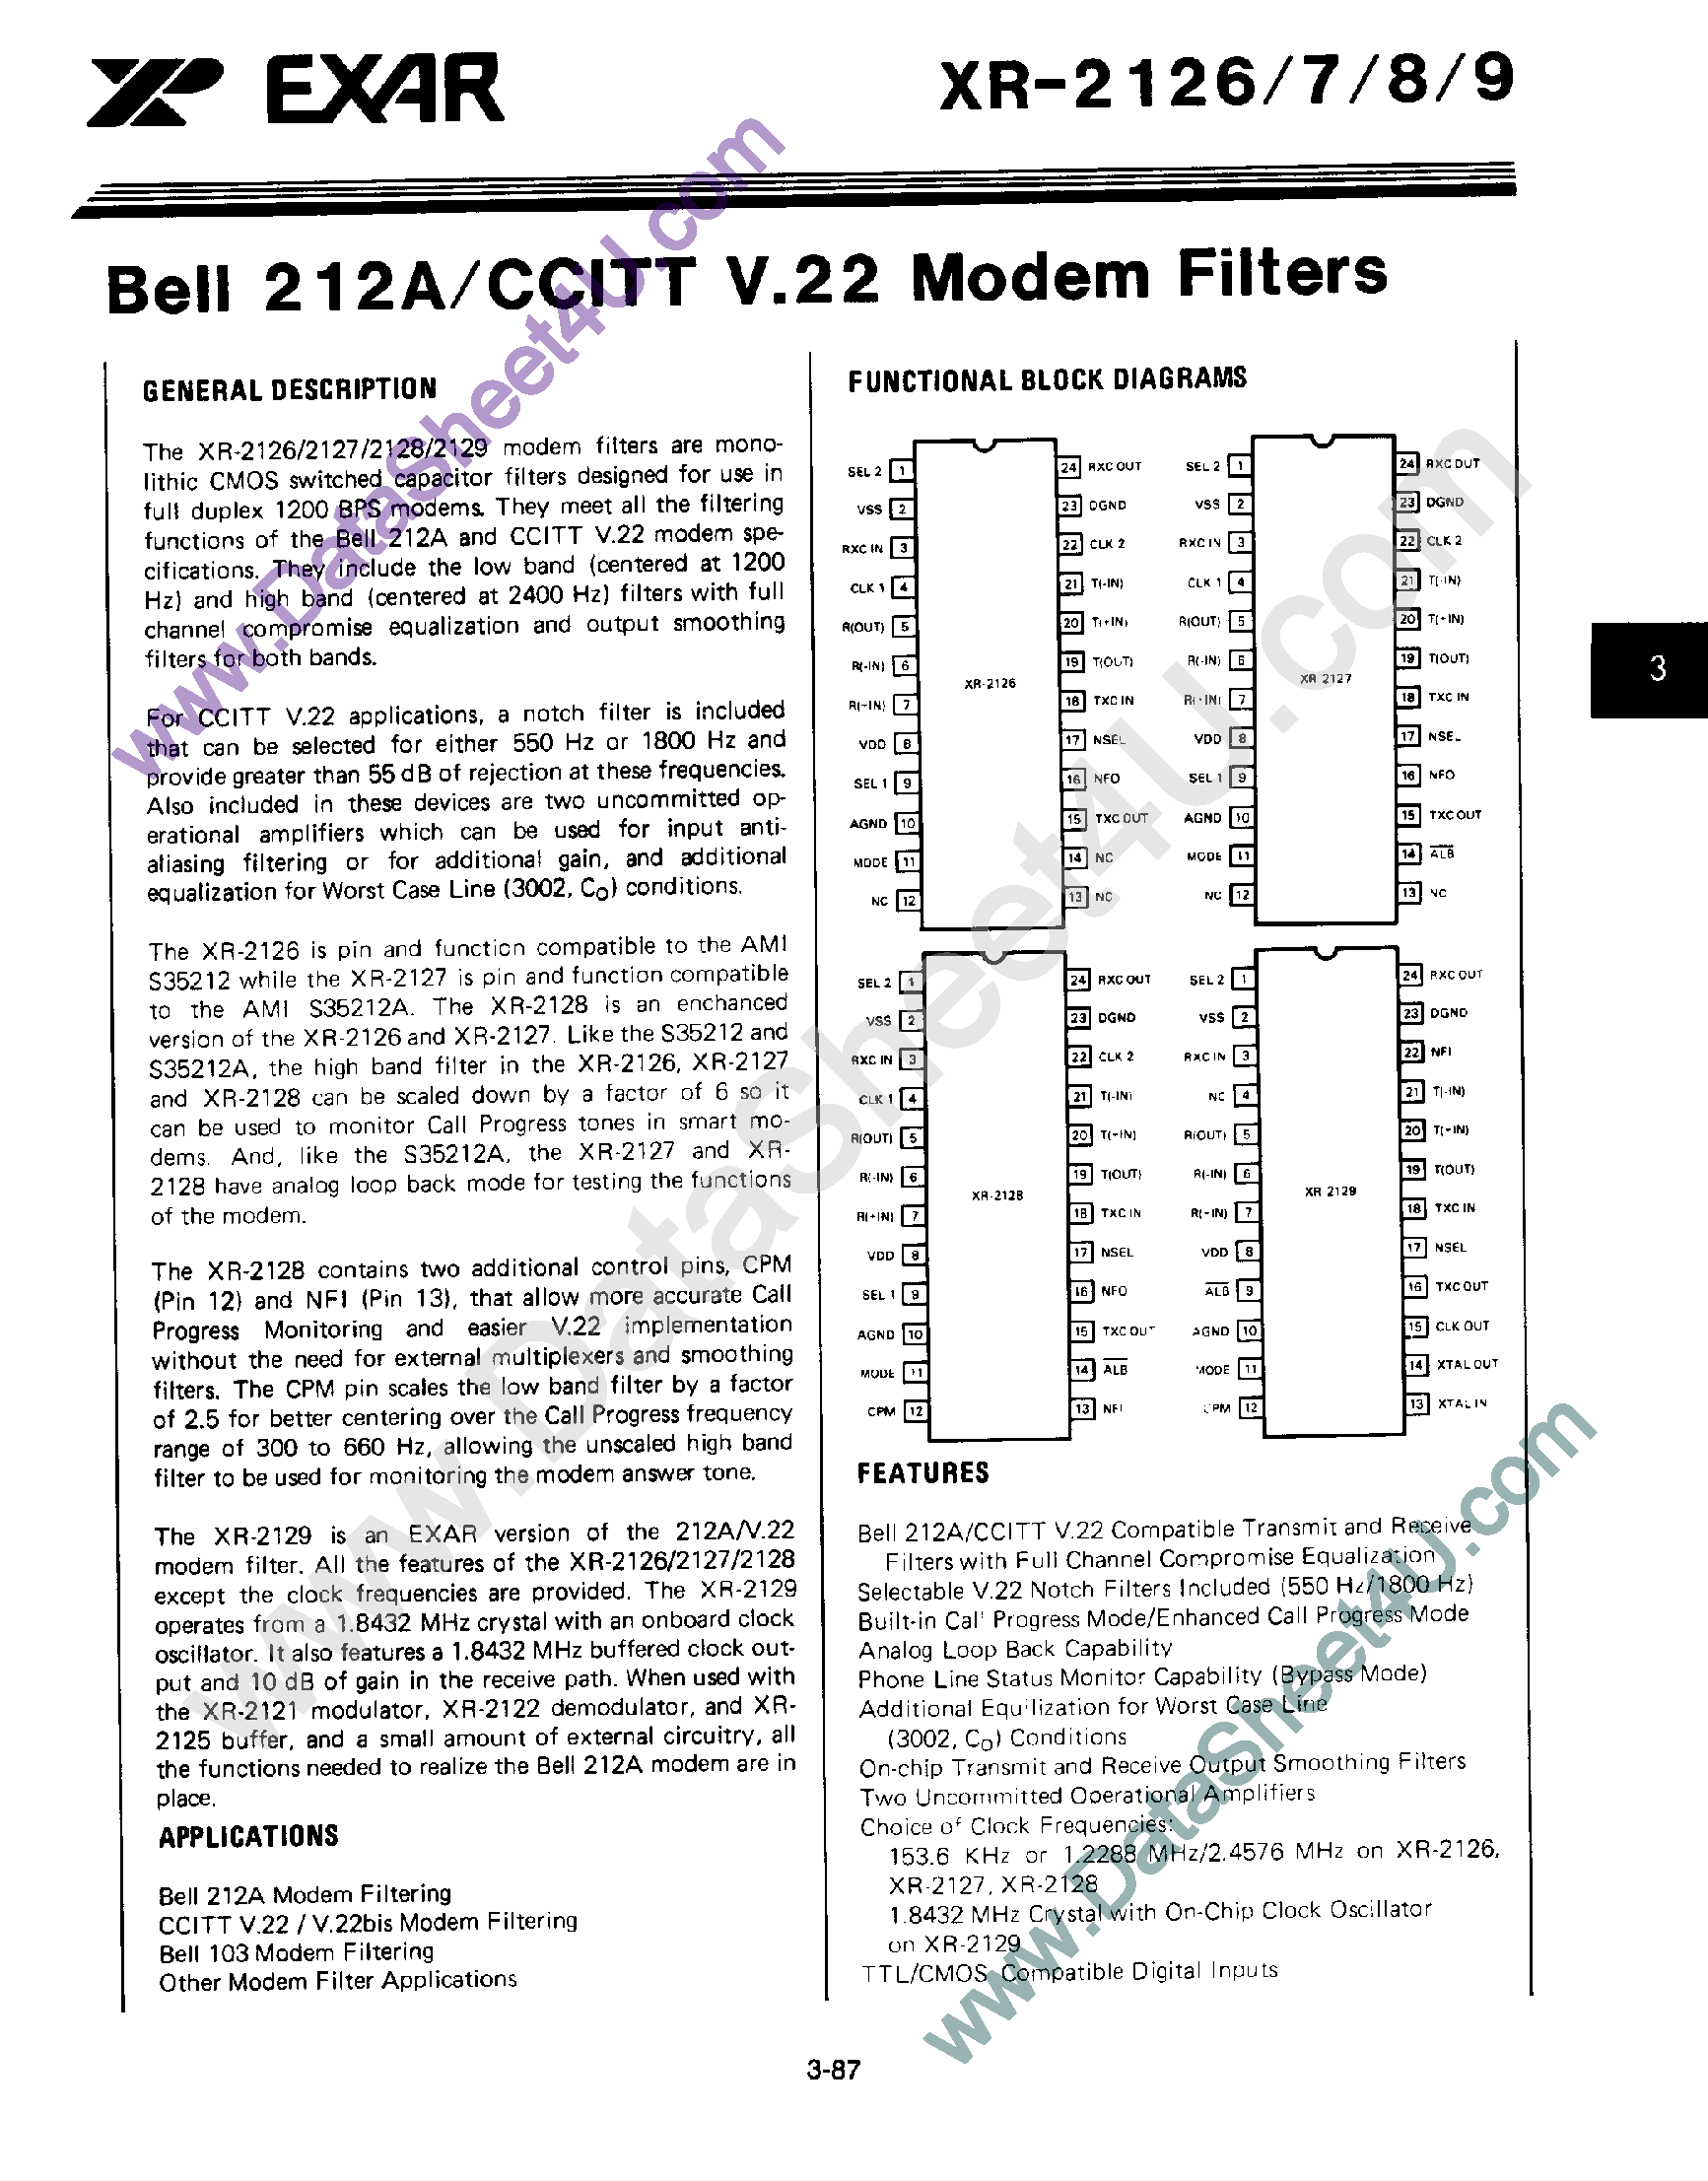 Даташит XR-2127 - Bell 212A / CCITT V.22 Modem Filters страница 1